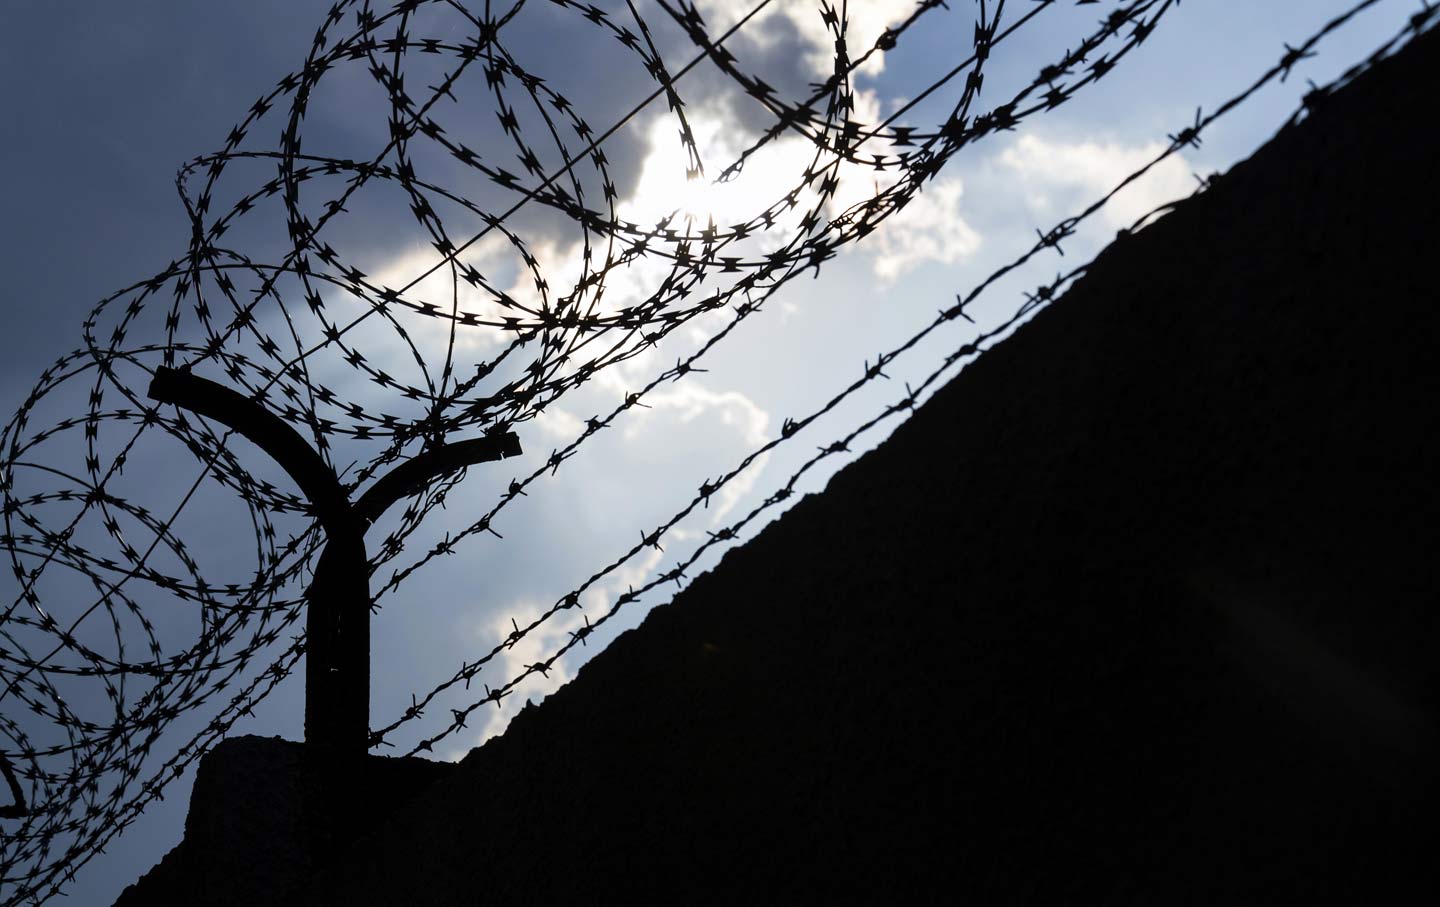 Prison Barbed Wire